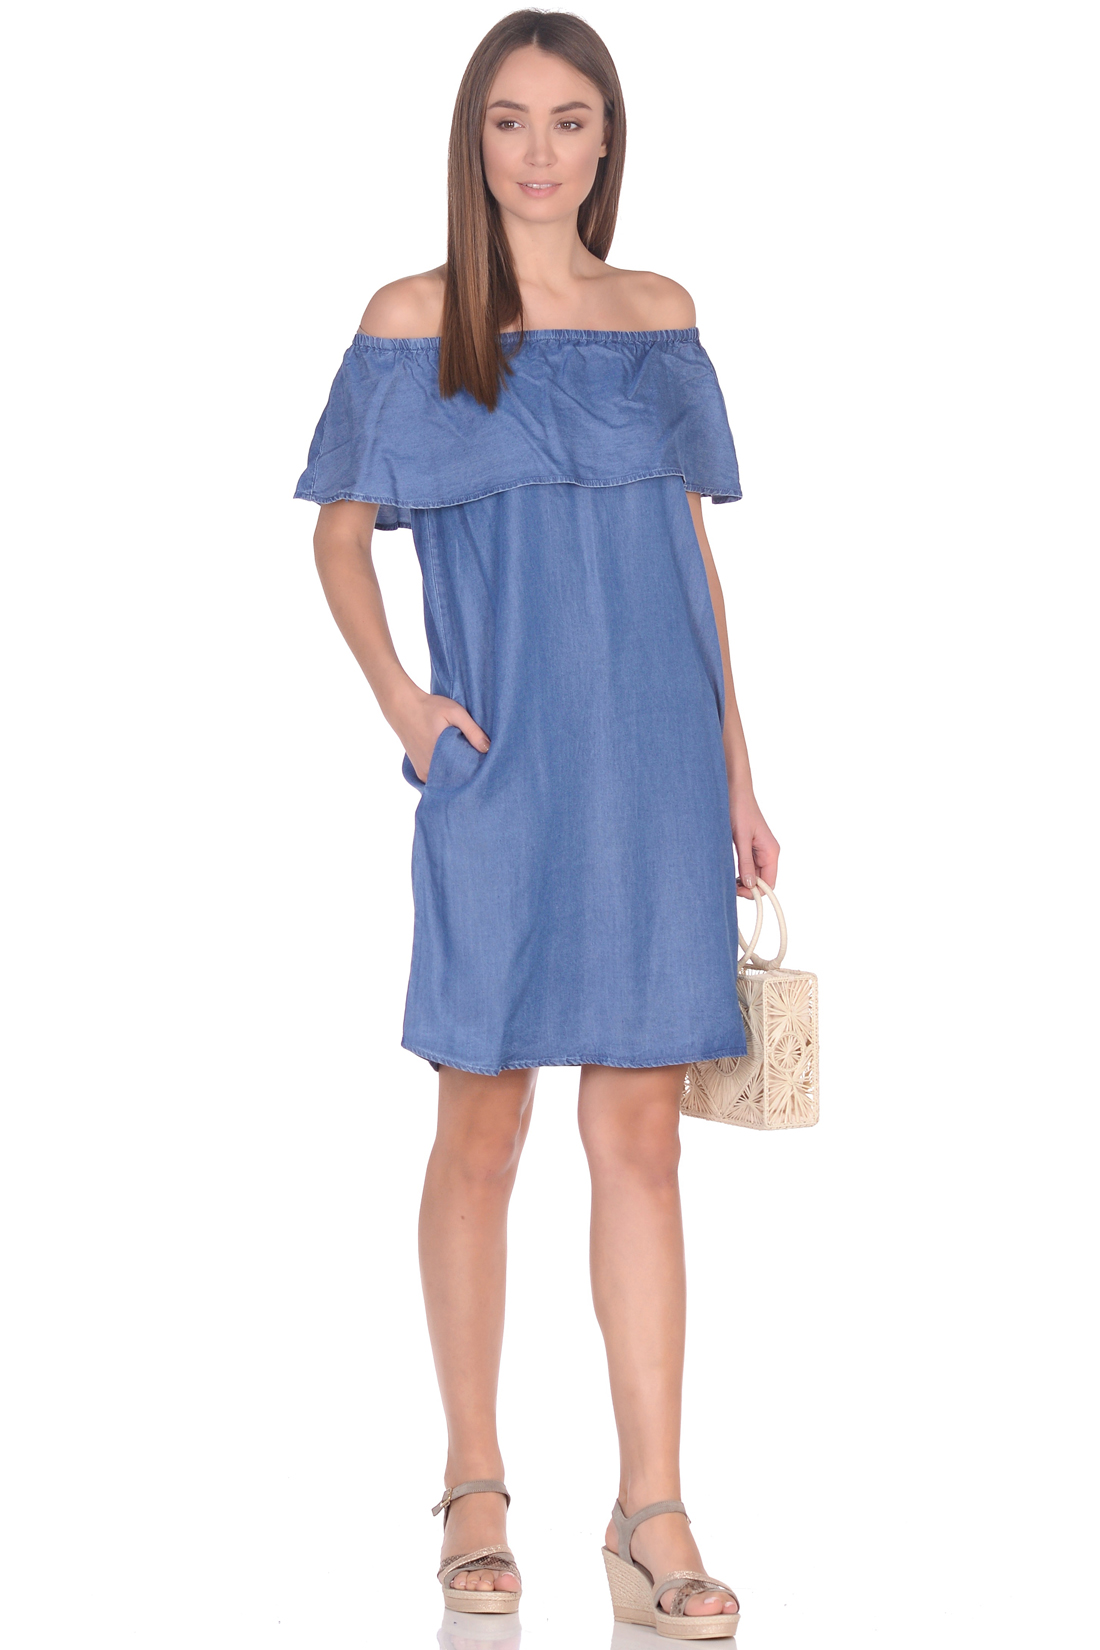 Платье с воланом из денима-шамбри (арт. baon B459102), размер M, цвет blue denim#голубой Платье с воланом из денима-шамбри (арт. baon B459102) - фото 1